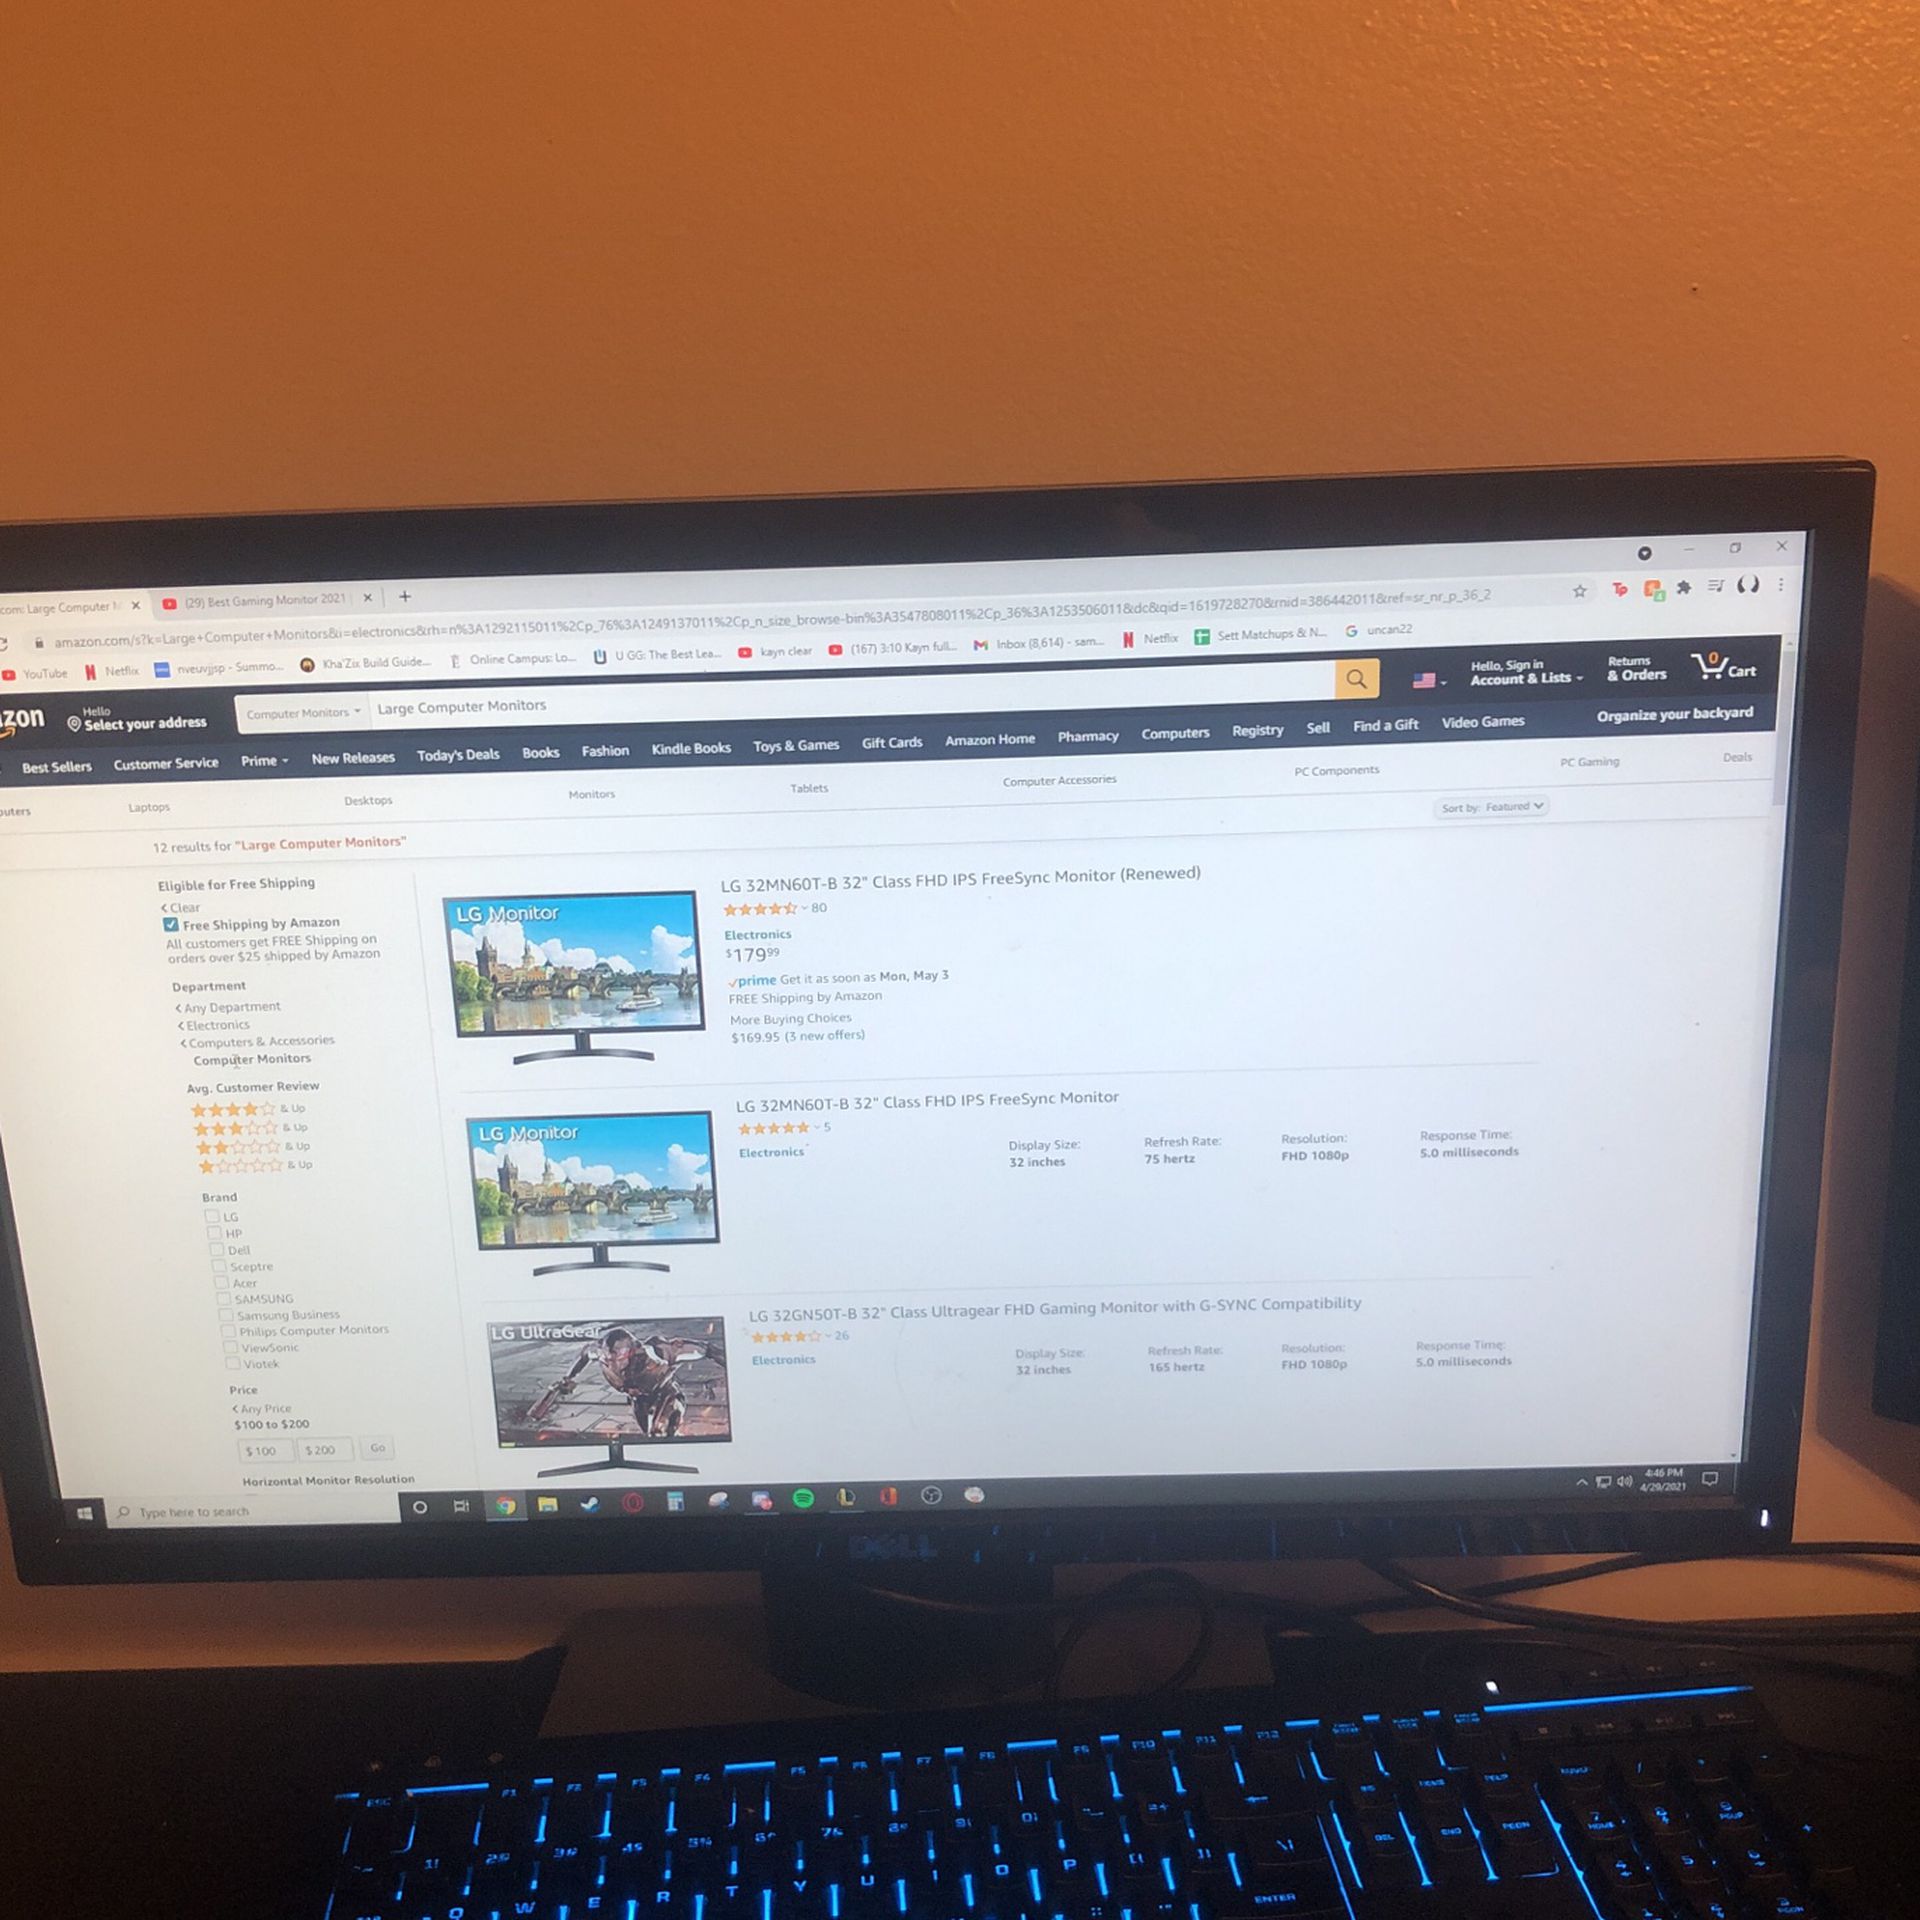 Dell Desktop Monitor